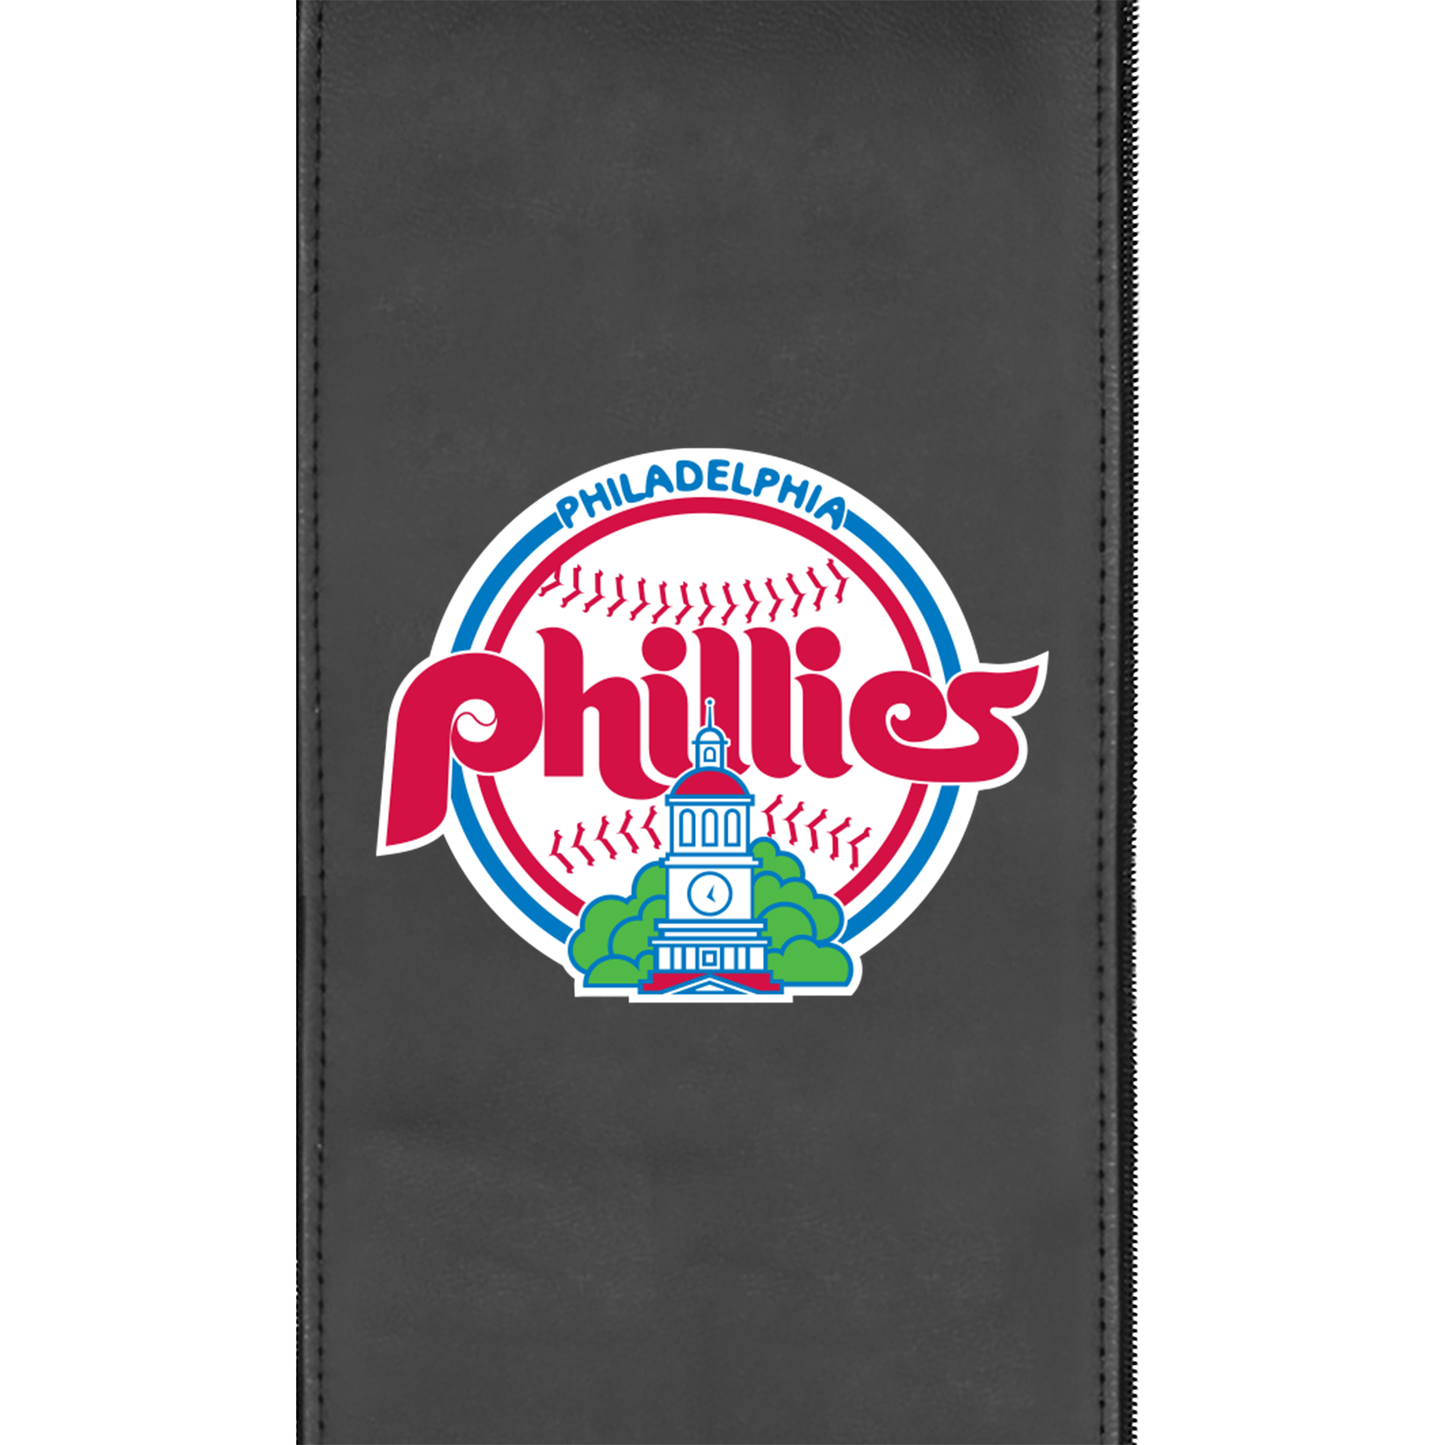 Philadelphia Phillies Cooperstown Primary Logo Panel